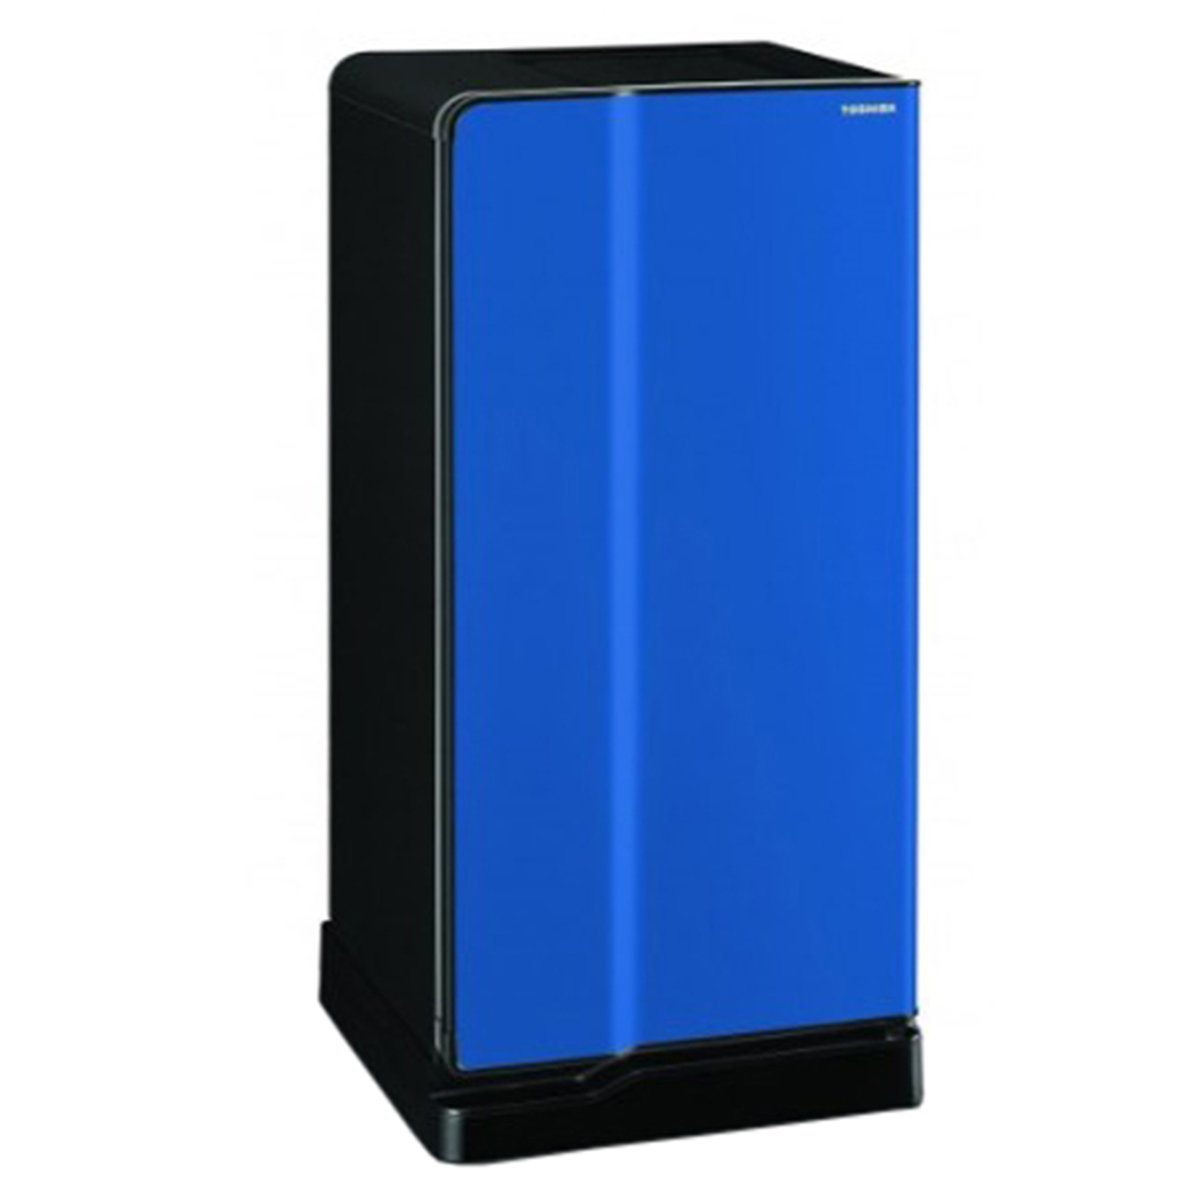 Toshiba Single Door Refrigerator GRE1837BBK 180Ltr